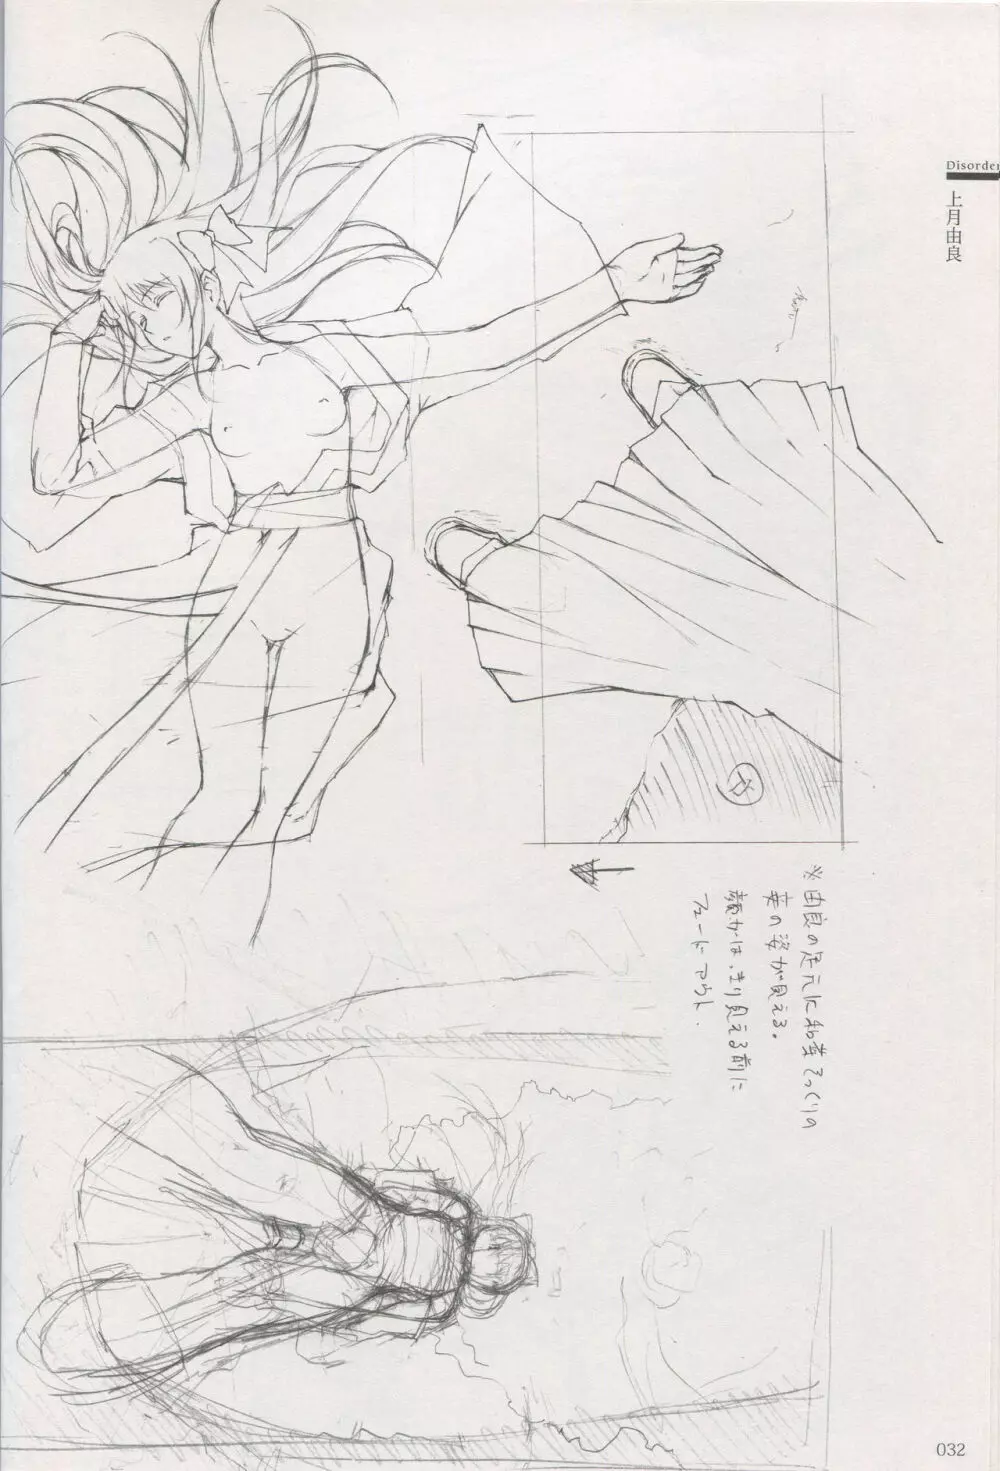 カルタグラ Art works 「Disorder」 26ページ